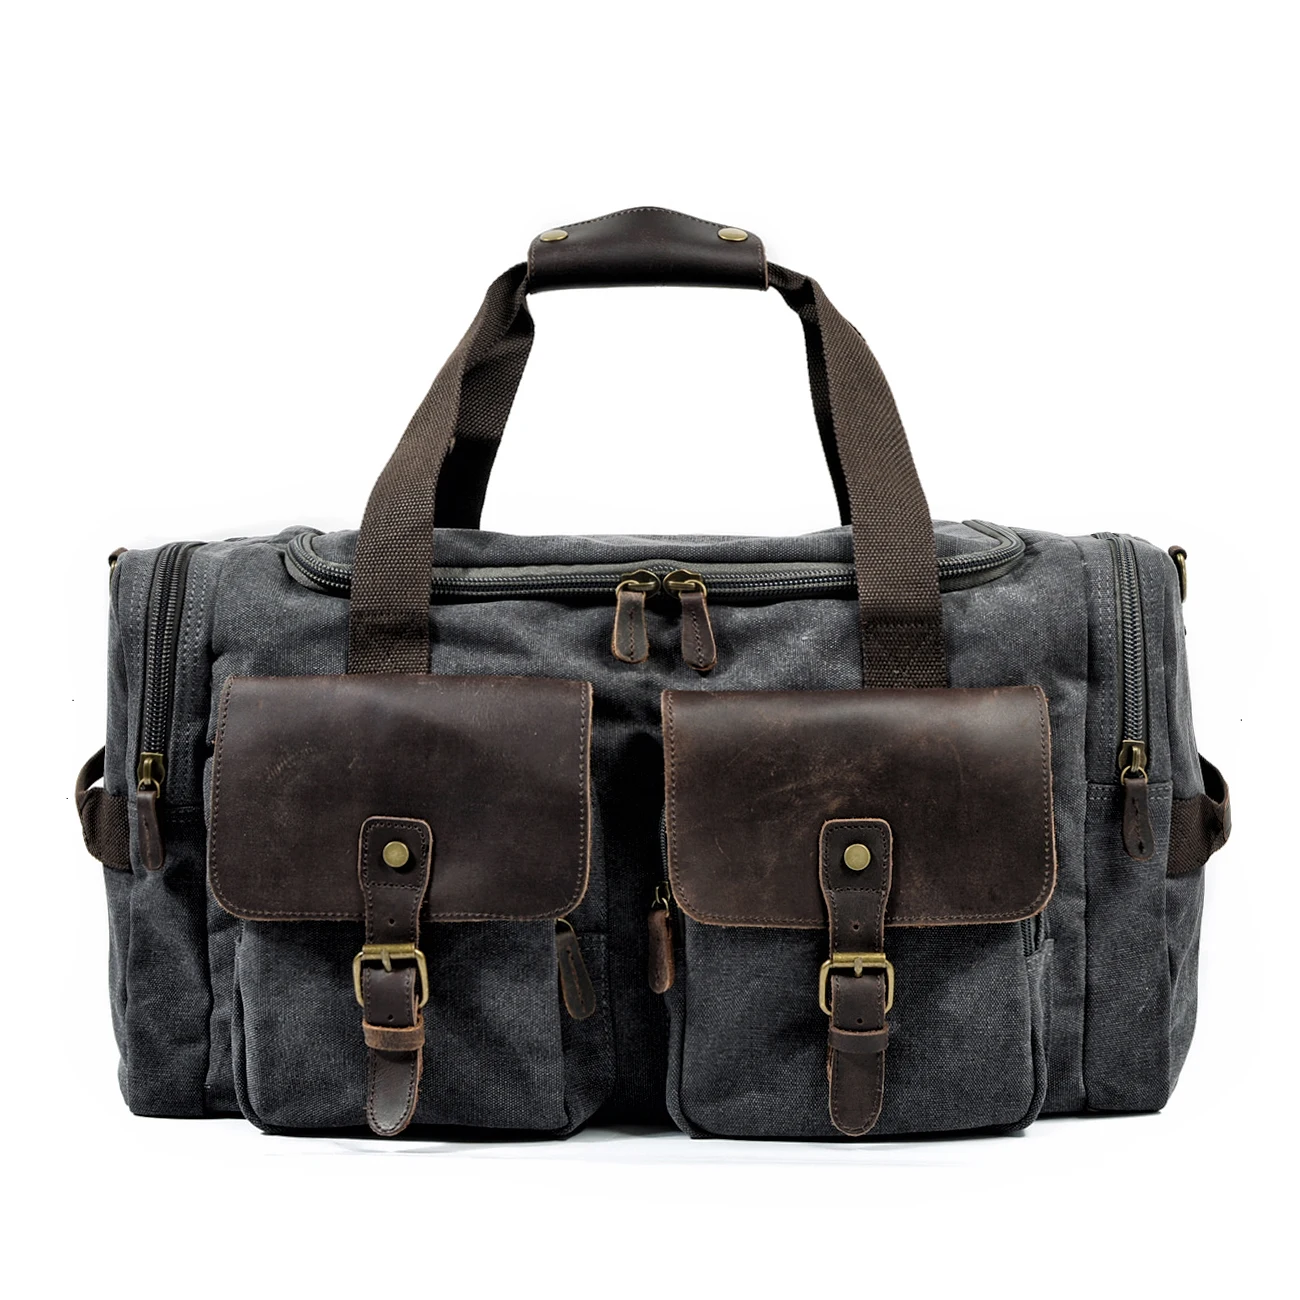 Retro canvas travel bag men's business travel bag large-capacity travel sports fitness bag shoulder bag messenger bag